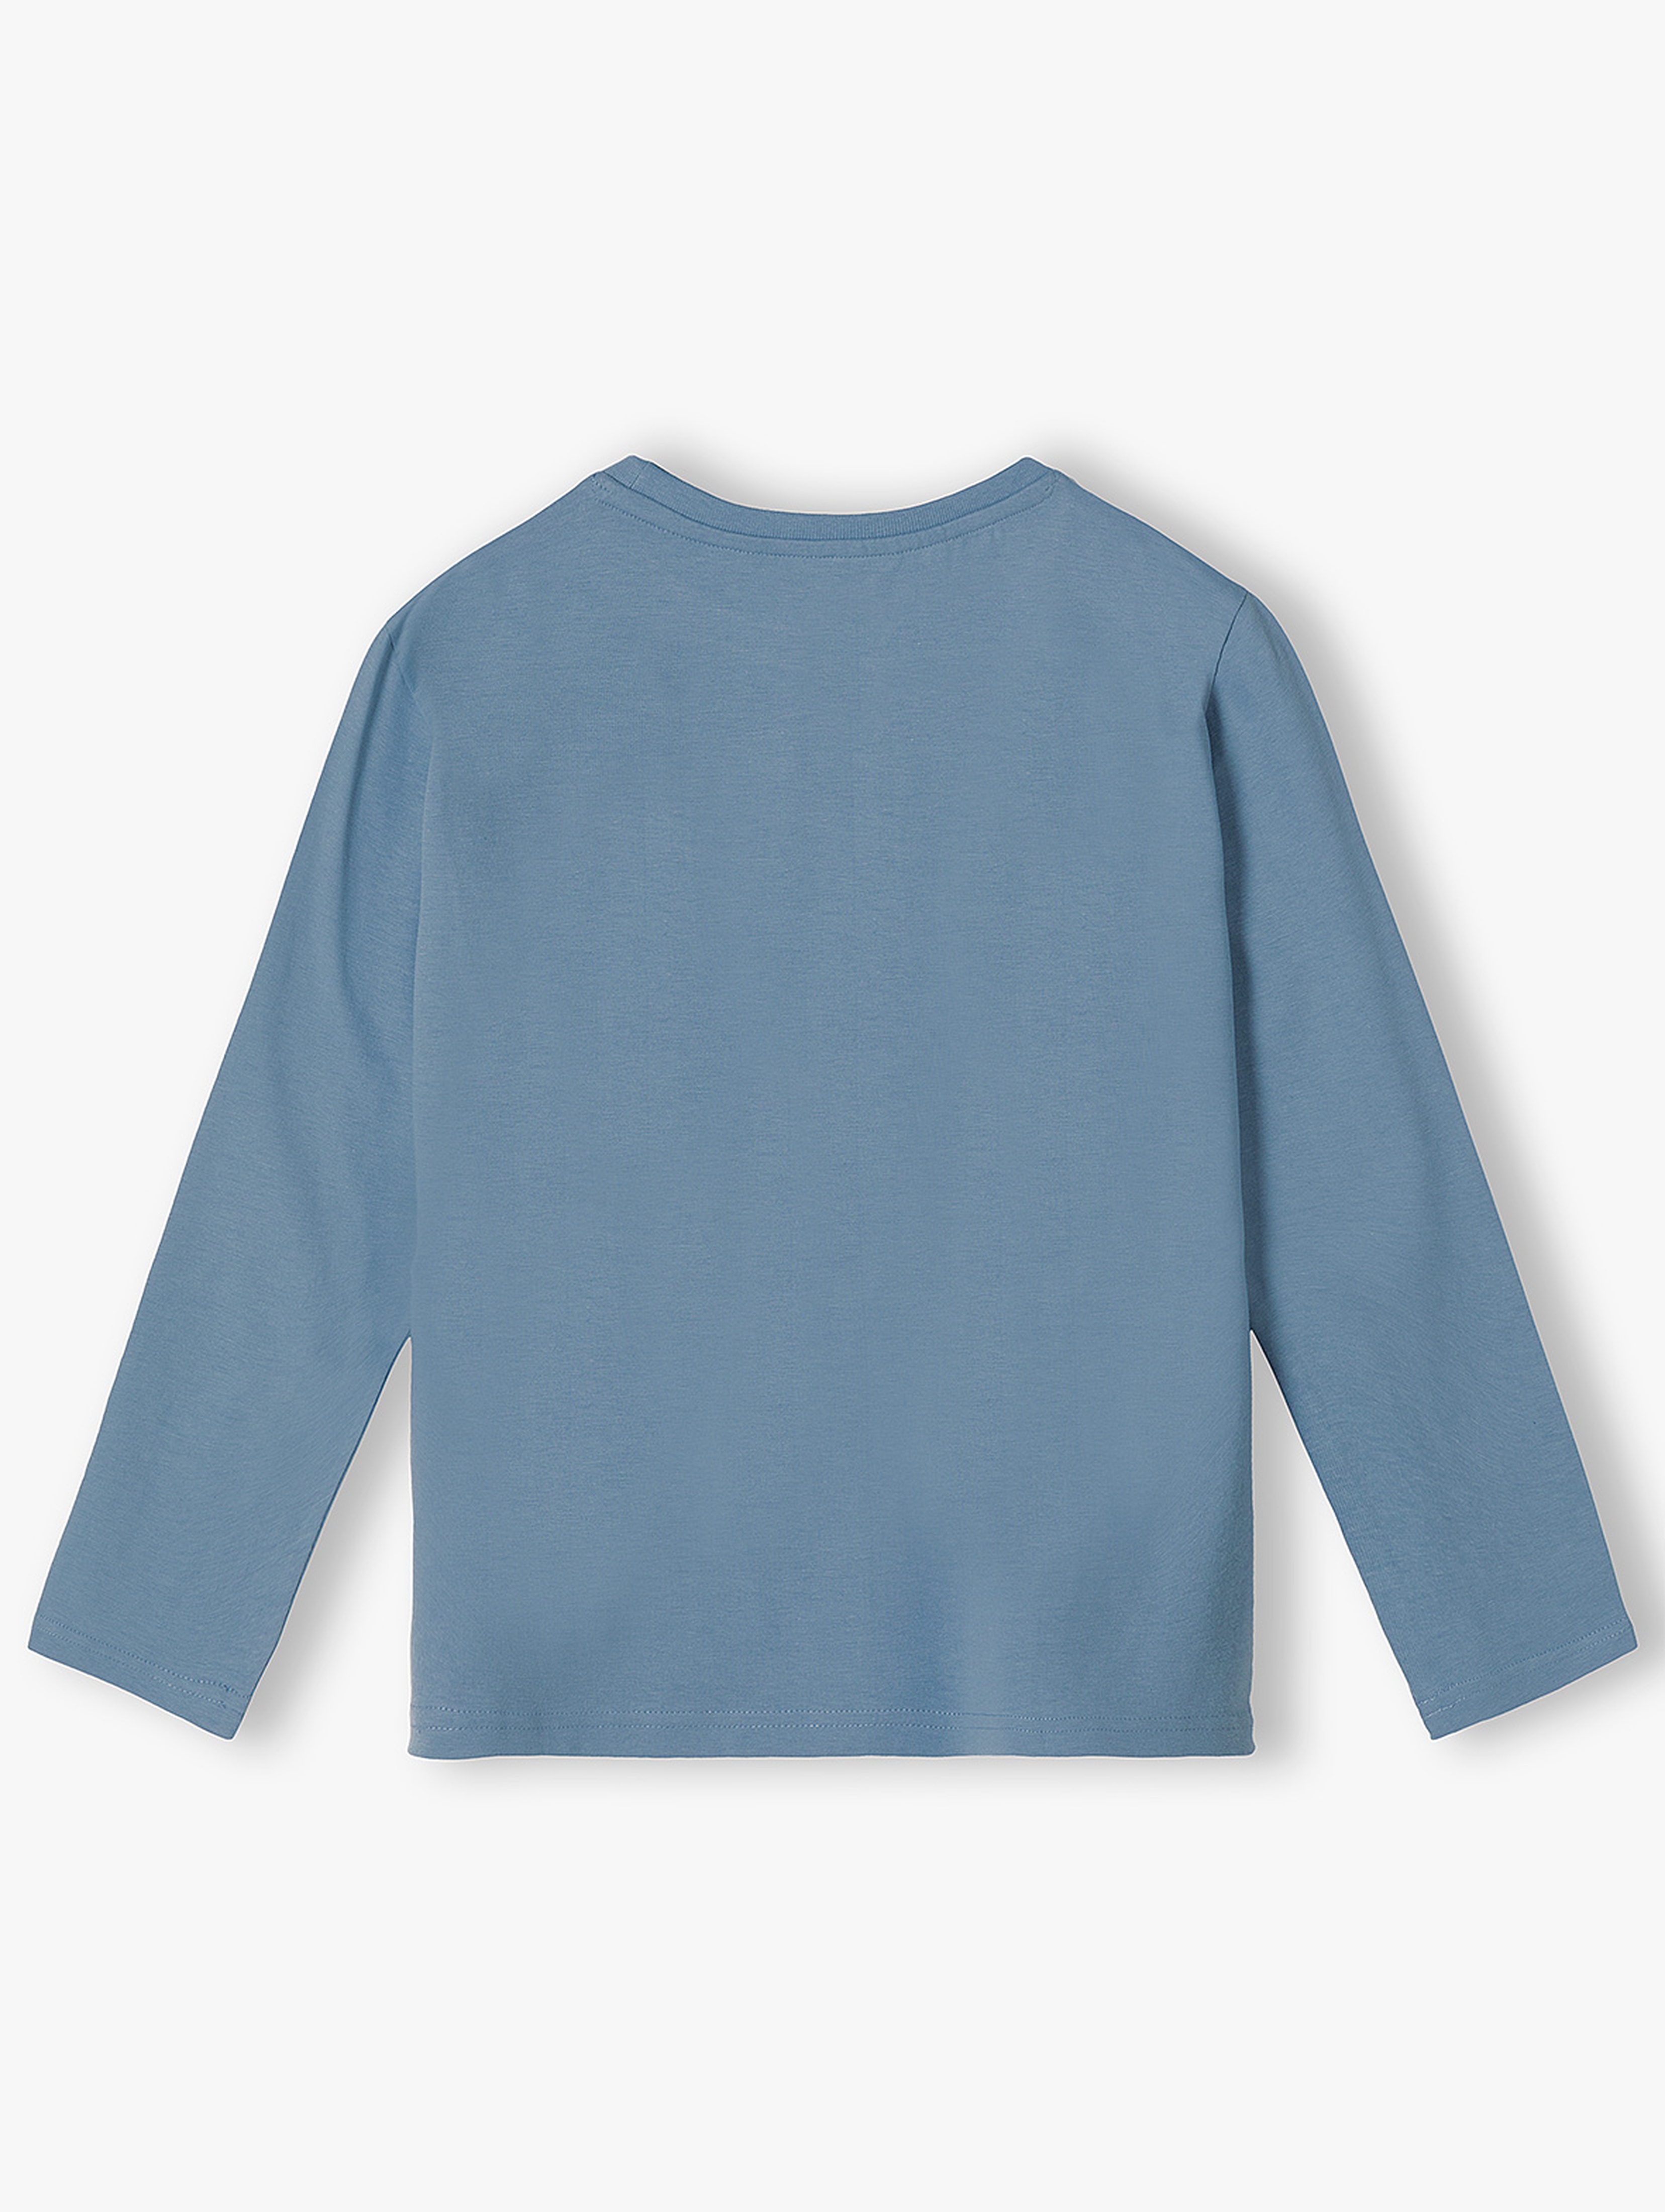 Bluzka dla chłopca bawełniana niebieska z długim rękawem